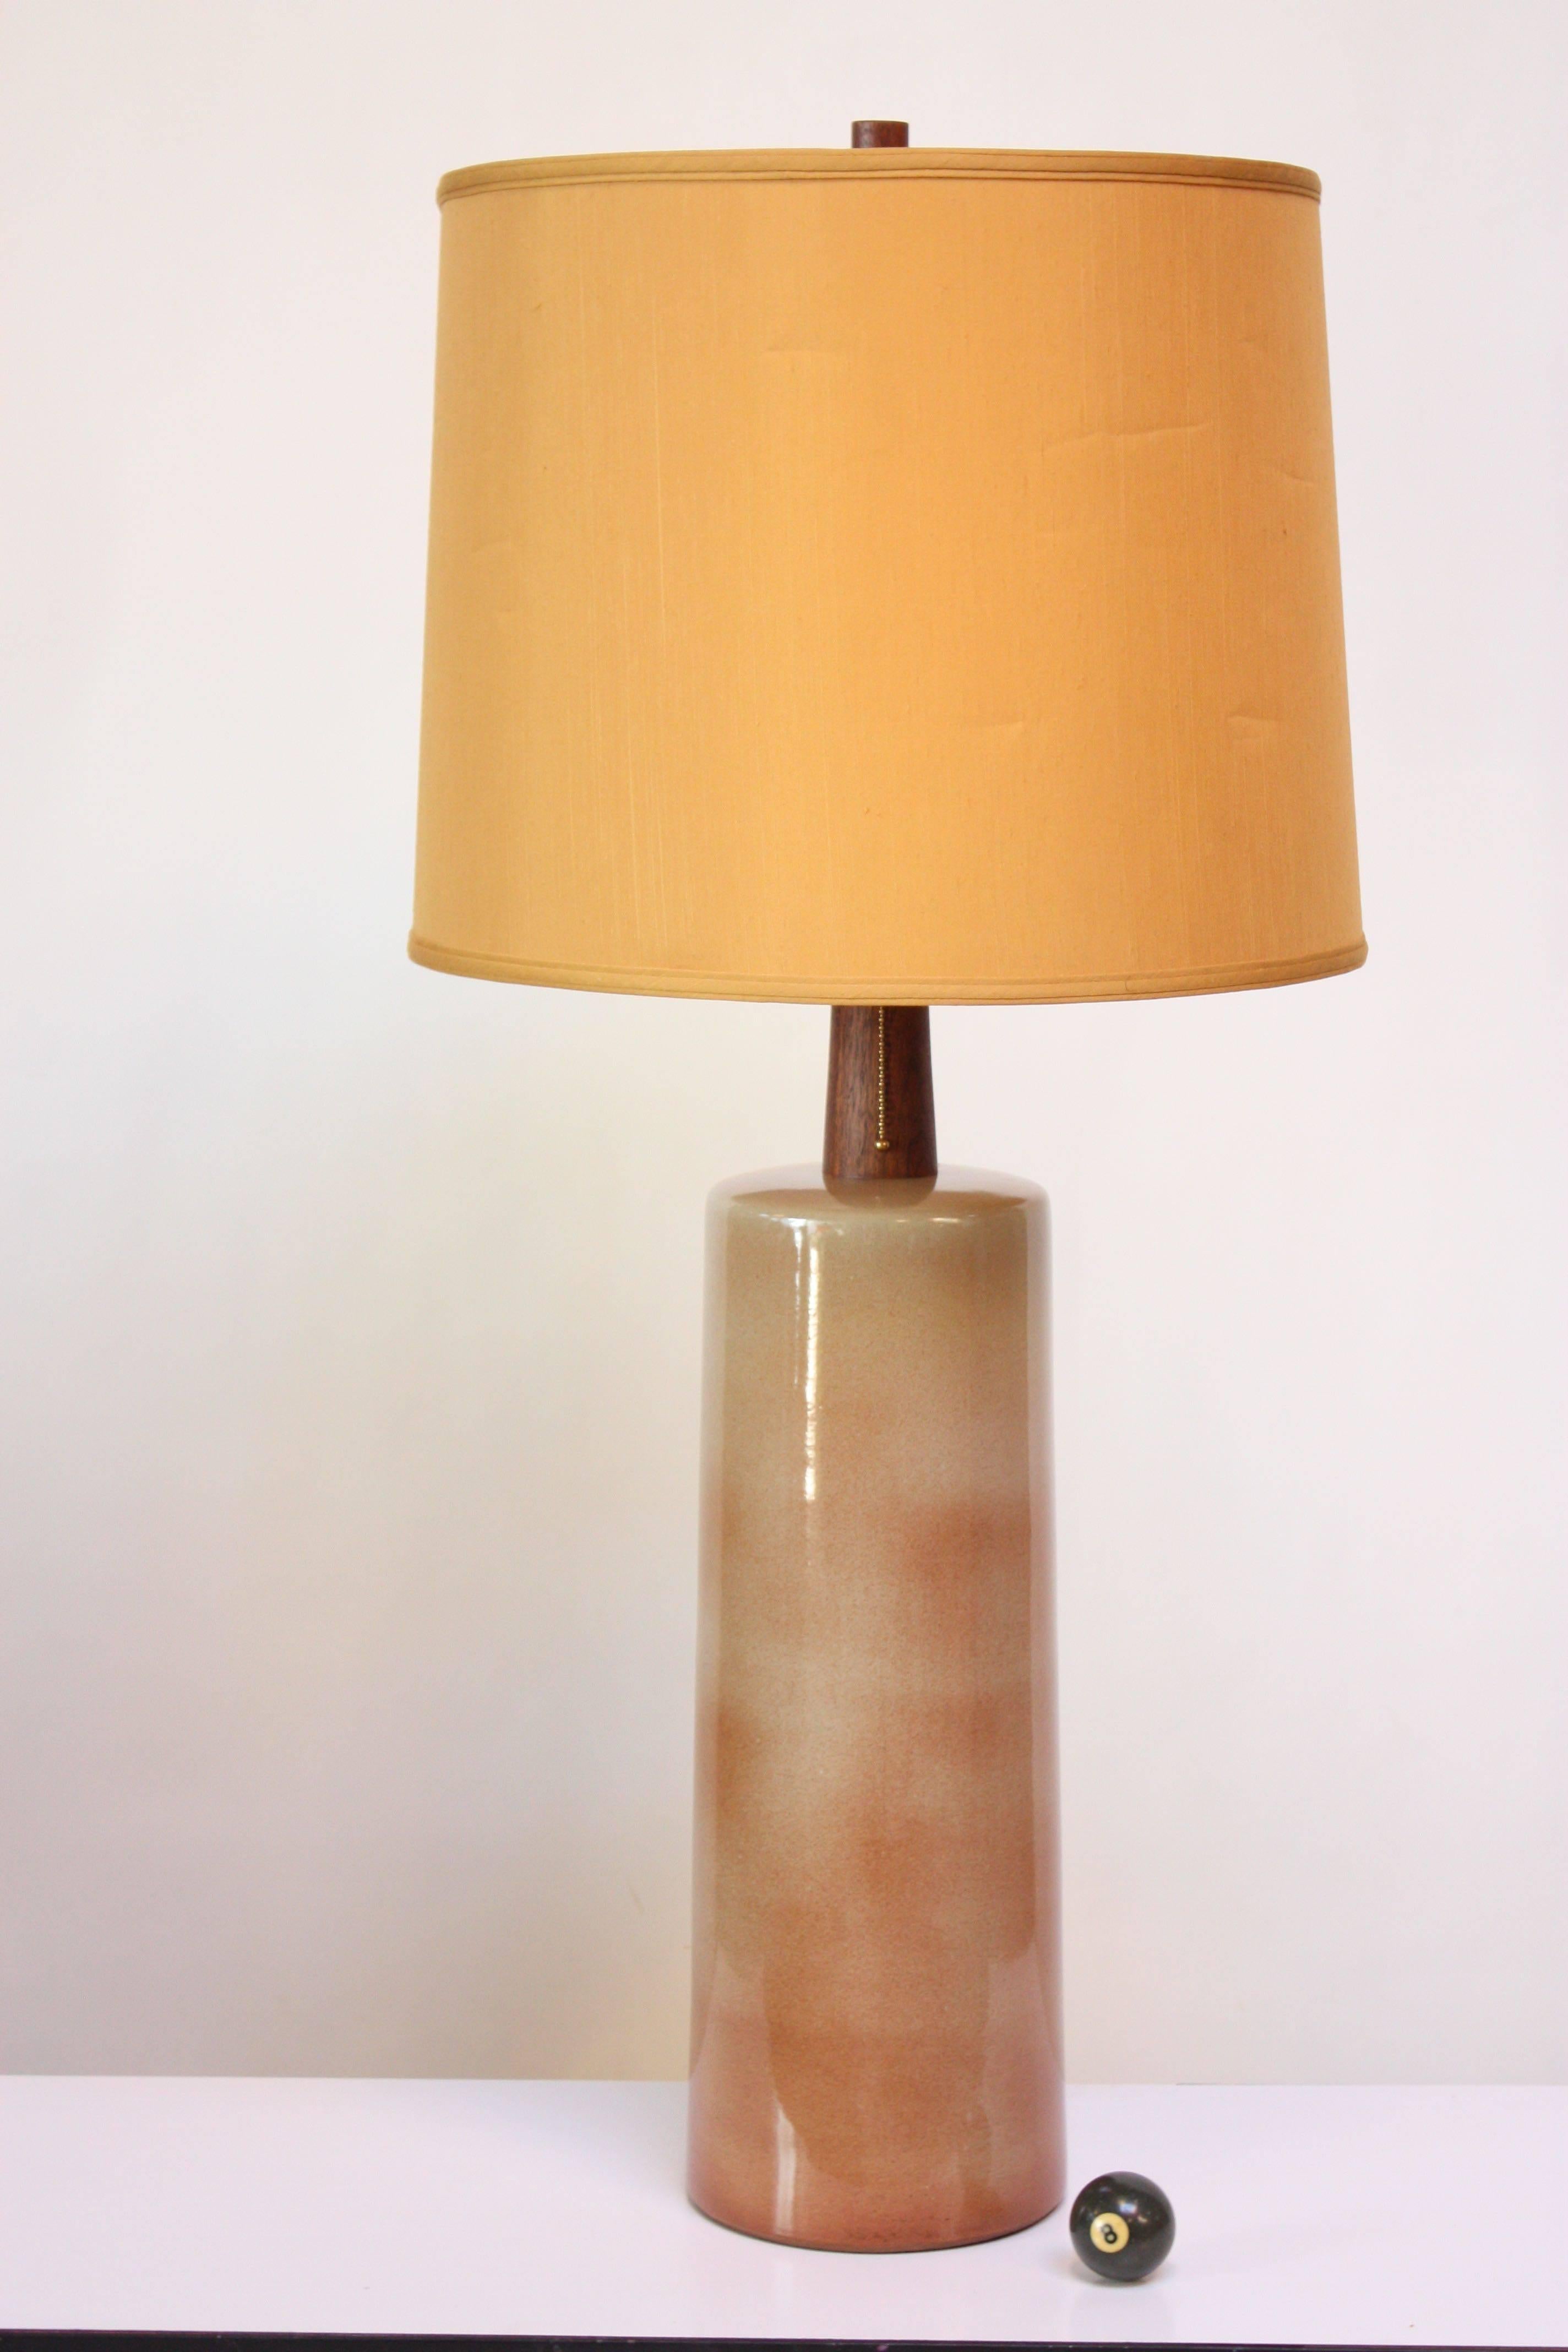 Grande lampe de table en céramique (modèle #191) conçue par Gordon et Jane Martz pour Marshall Studios dans les années 1960. Pinceau décoré d'une glaçure très brillante dans les tons beige clair et rose poussiéreux. Le grain est vif et la couleur